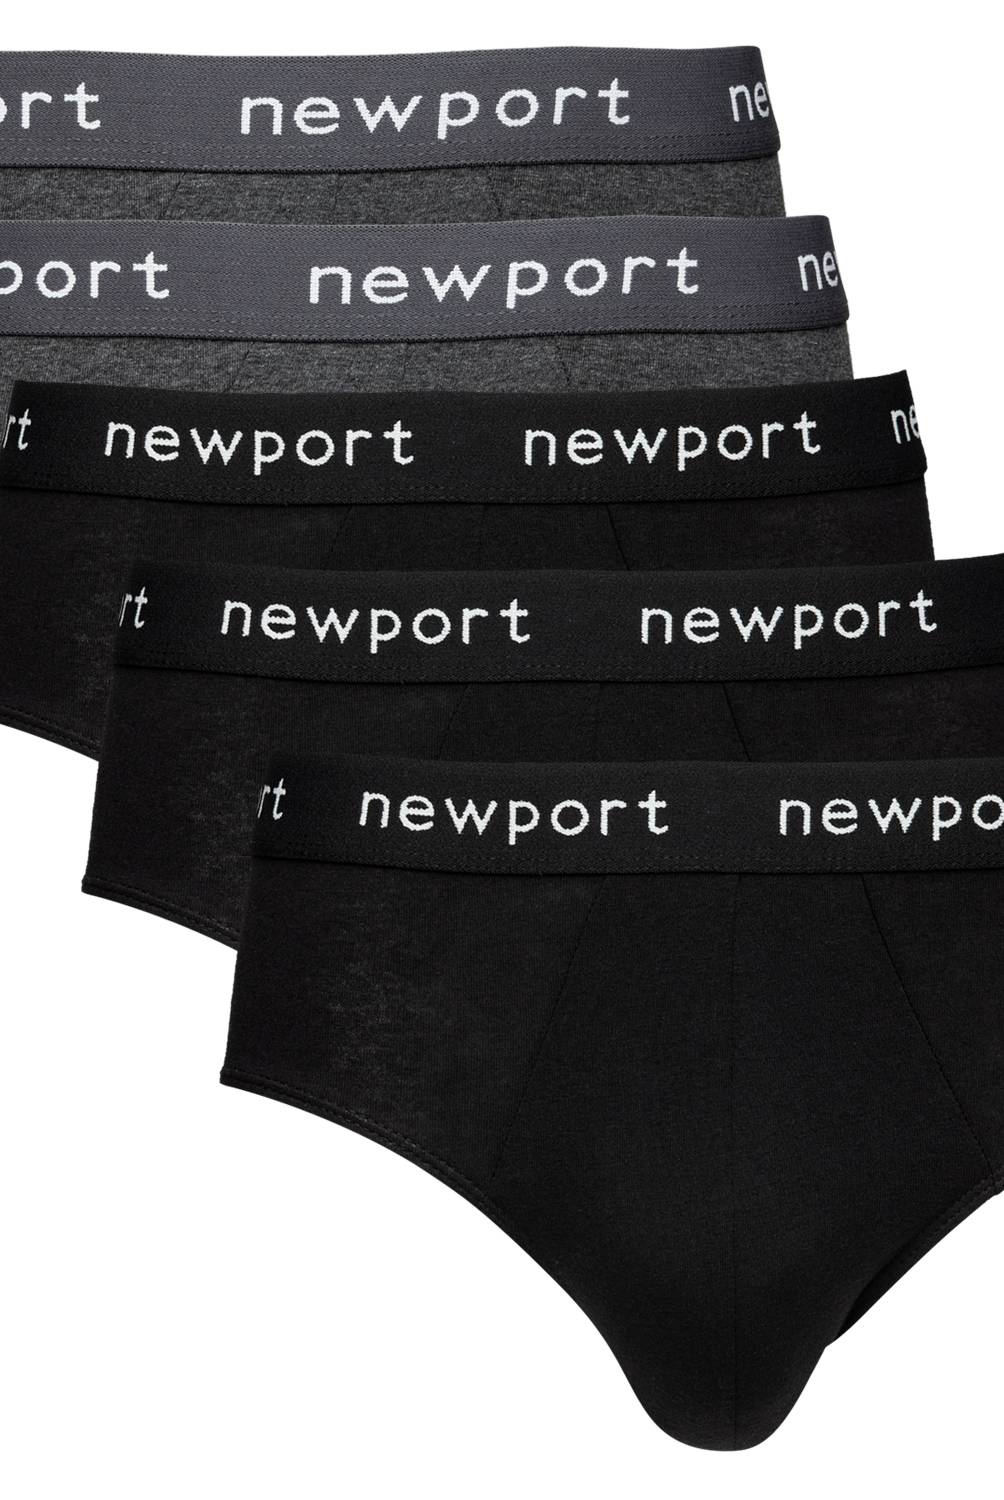 NEWPORT - Pack de 5 Slip de Algodón Hombre